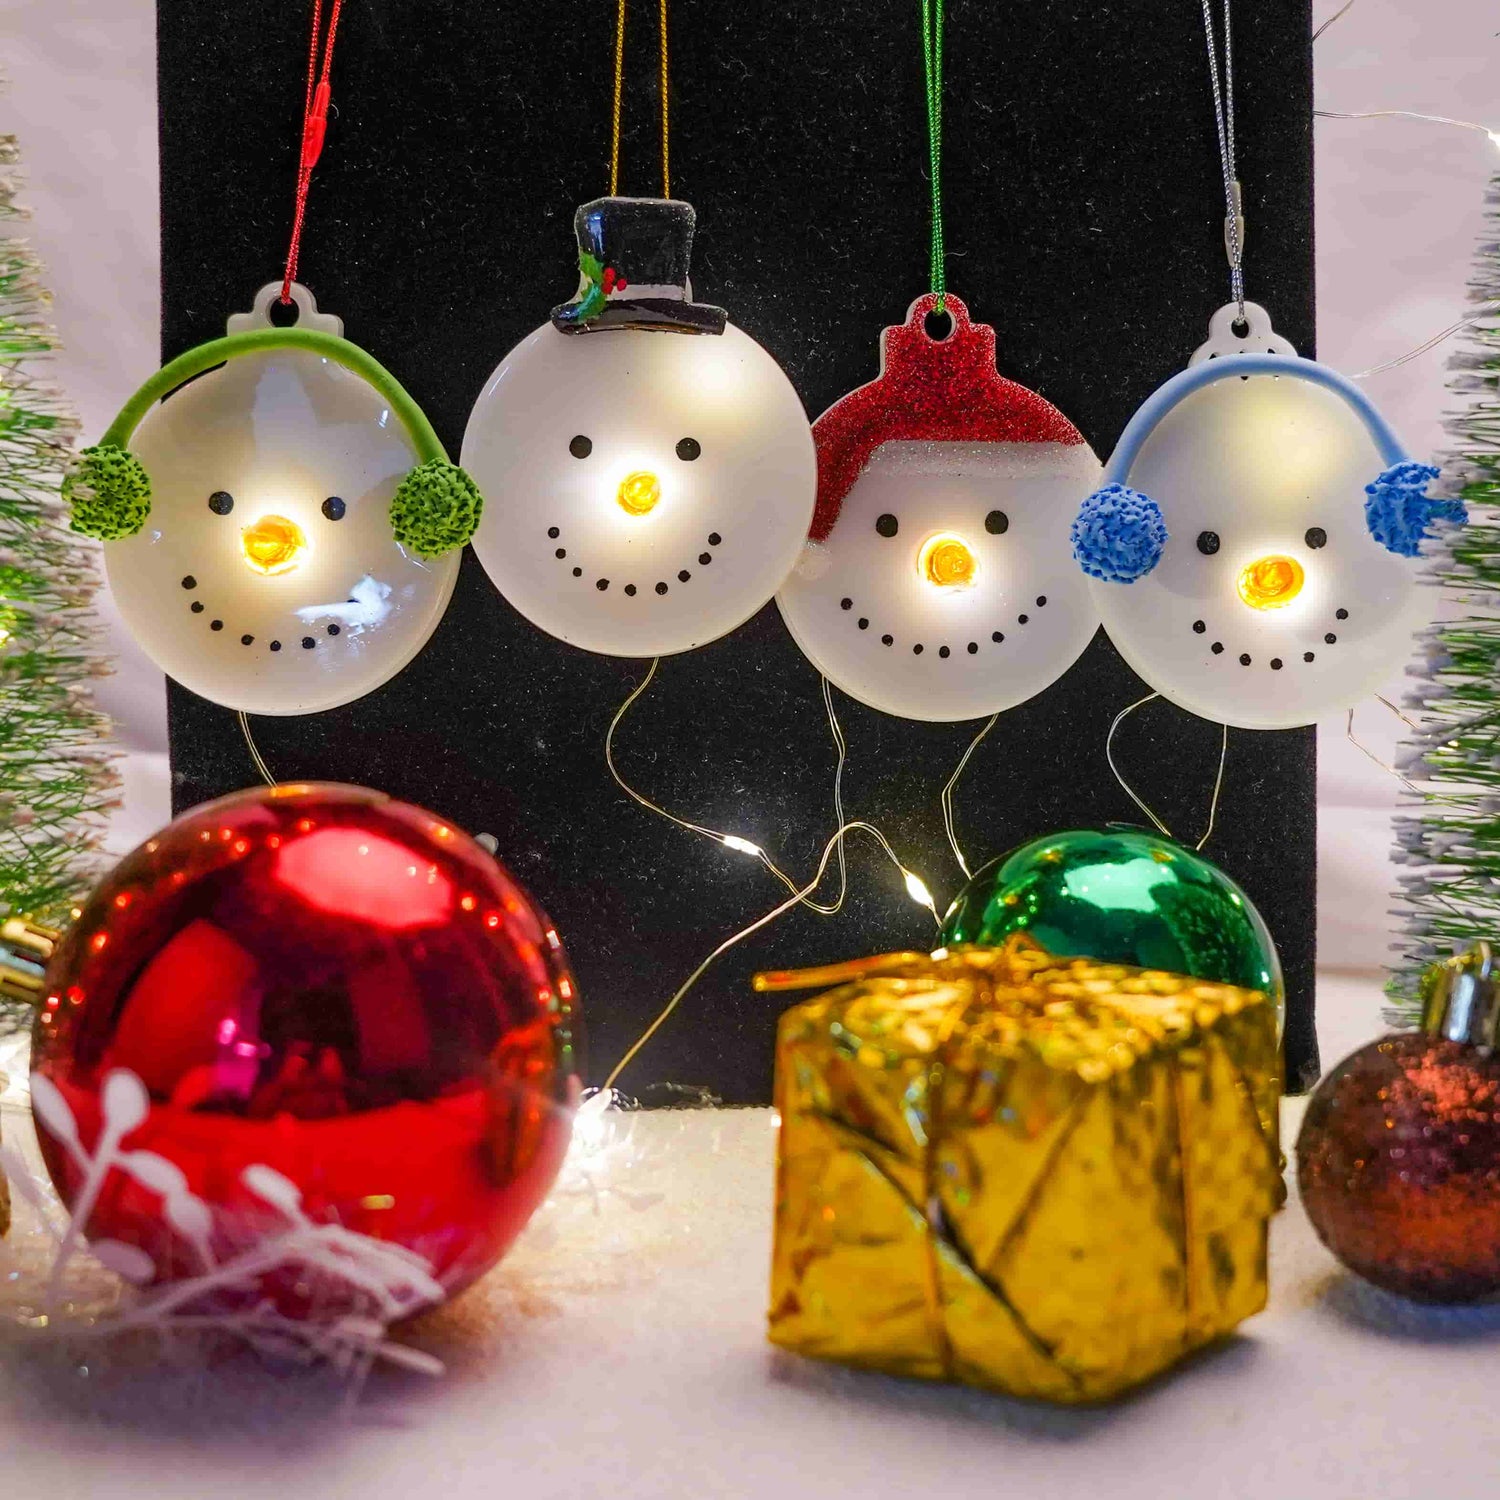 Christmas Ornament Resin Molds – Let's Resin